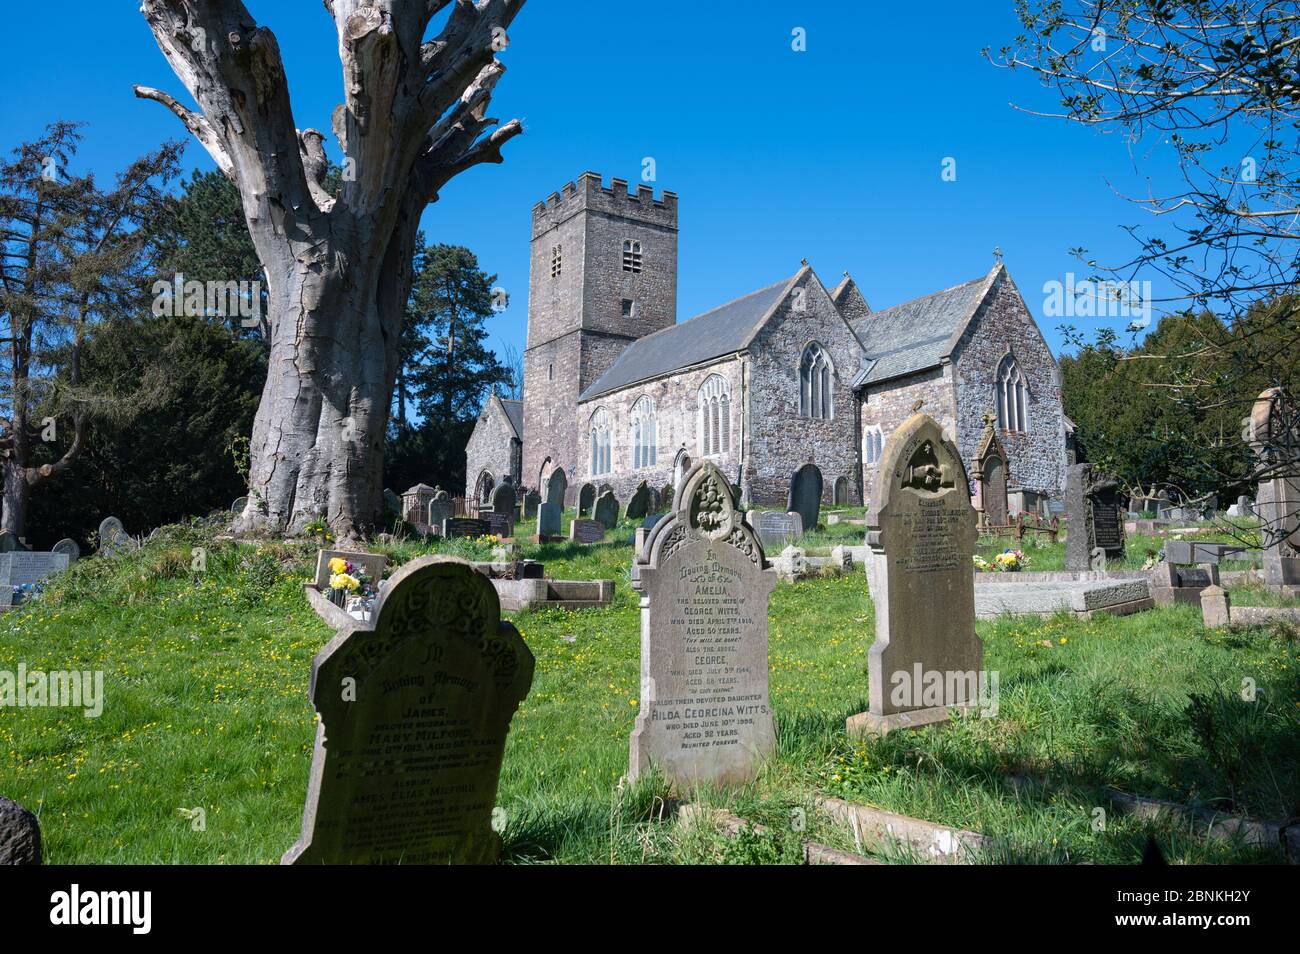 Chiesa Parrocchiale di St Mellons, Cardiff, sotto un cielo blu sotto il sole di primavera durante la pandemia del coronavirus, 25/3/20. Foto Stock